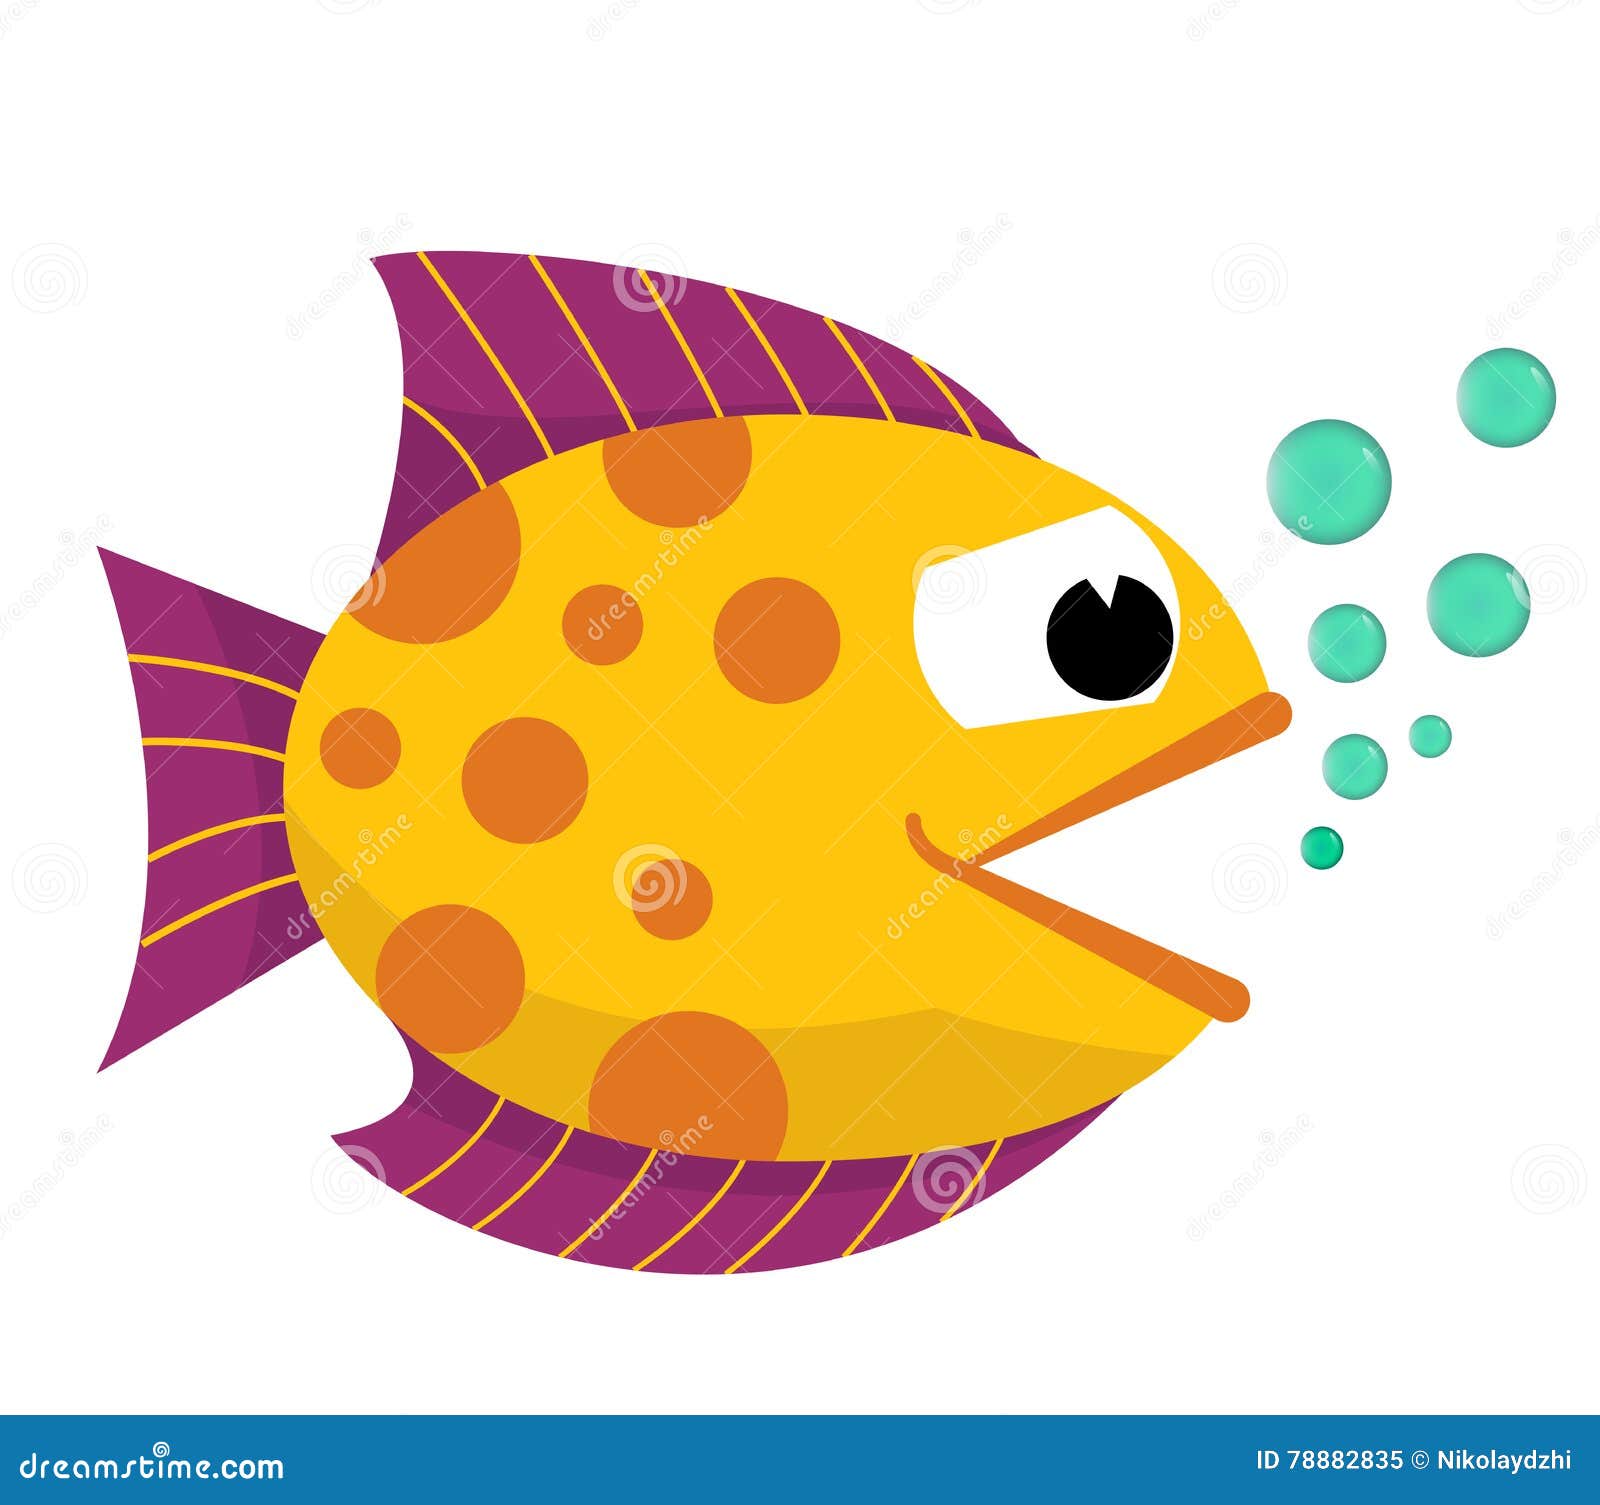 Рыбка открывает рот. Тропическая рыбка с открытым ртом. Рыба с открывающимся ртом для детей. Рыба рисованная с открытым ртом. Рыба с открытым ртом вектор.